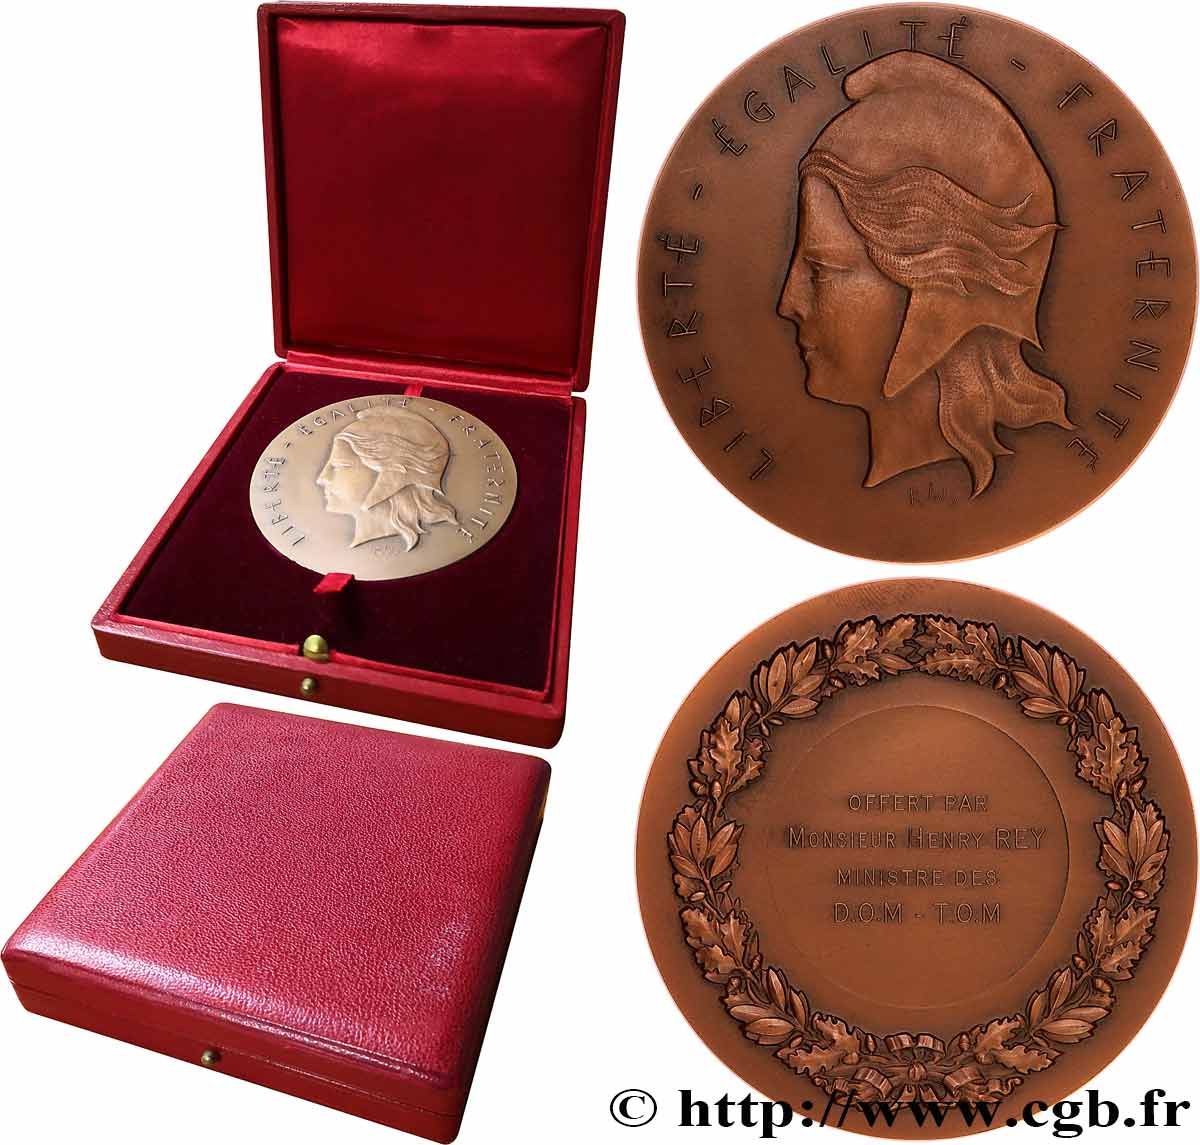 CINQUIÈME RÉPUBLIQUE Médaille, offerte par le ministre des D.O.M.-T.O.M. SUP